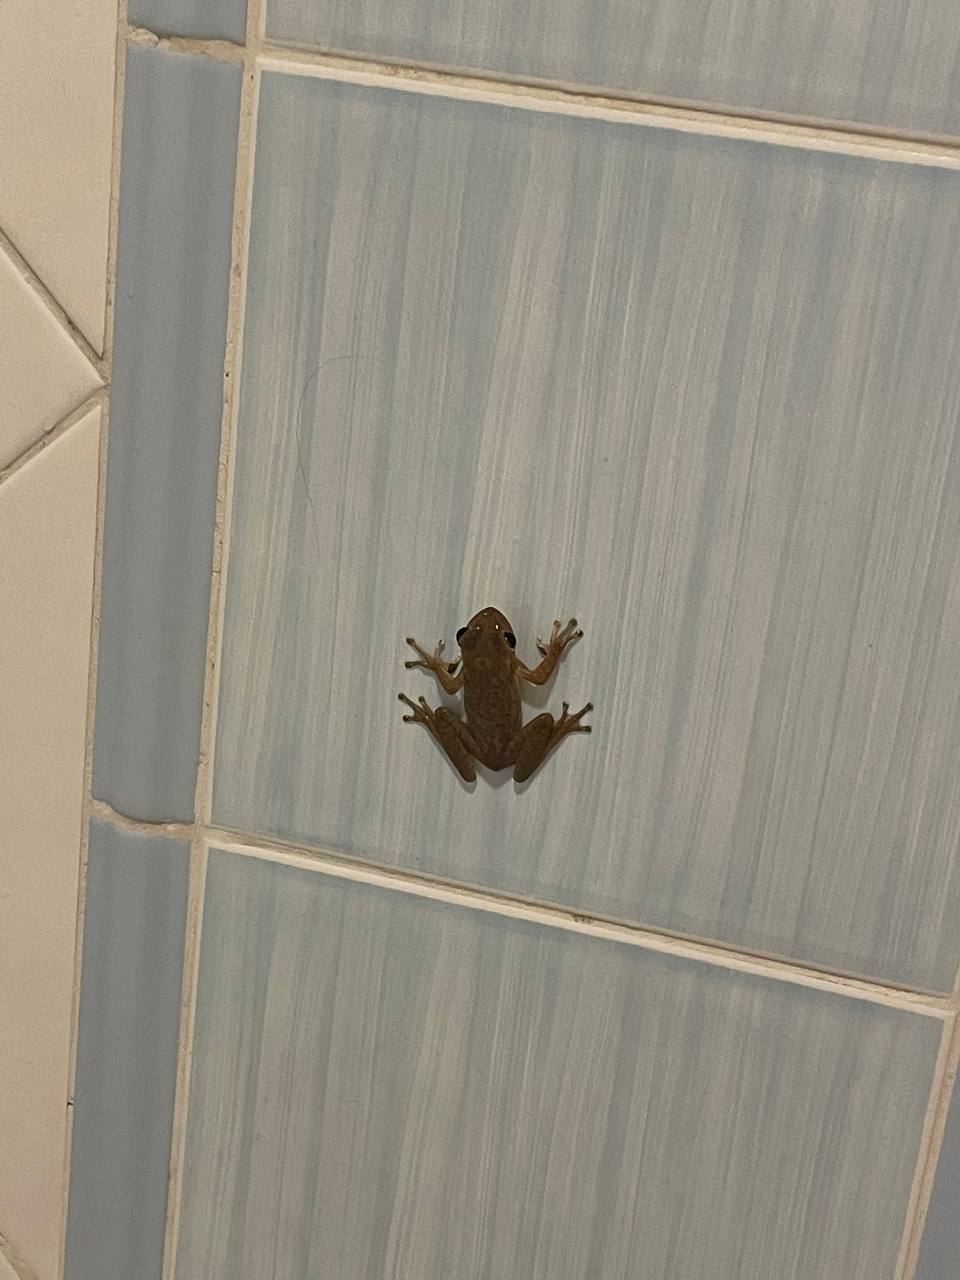 Фото PGS Varadero Hotel в ванной можно встретить лягушку